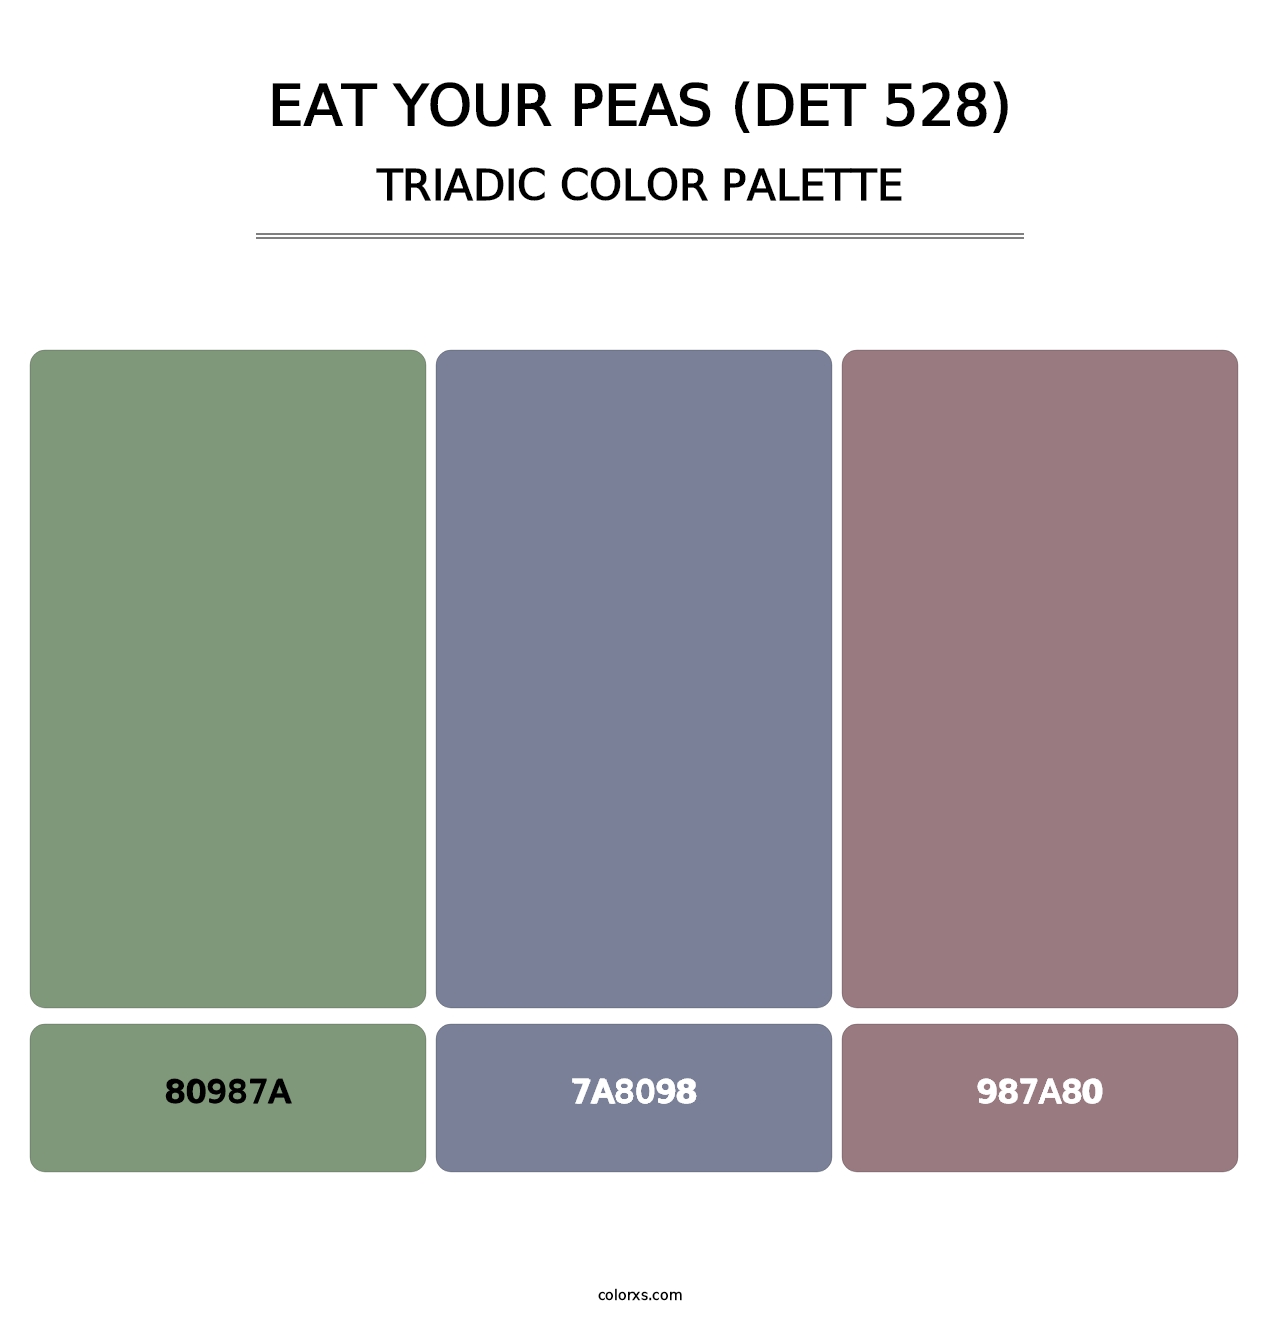 Eat Your Peas (DET 528) - Triadic Color Palette